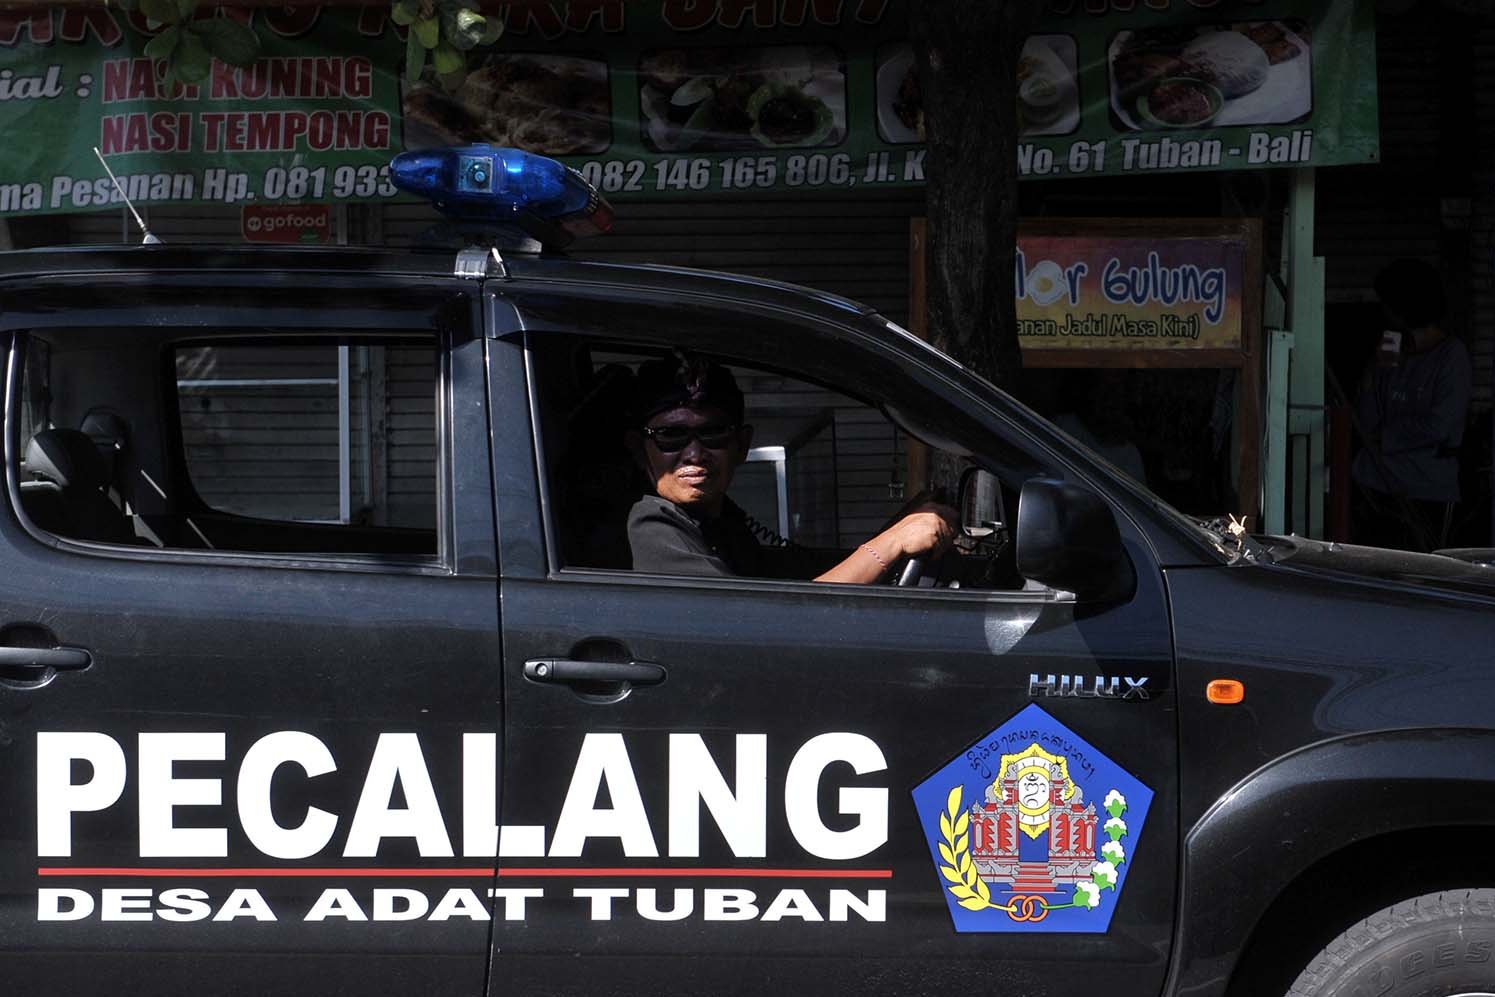 Pecalang atau petugas keamanan adat Bali melakukan patroli untuk memastikan ketertiban masyarakat terkait aturan pencegahan penyebaran COVID-19 di wilayah Desa Adat Tuban, Badung.